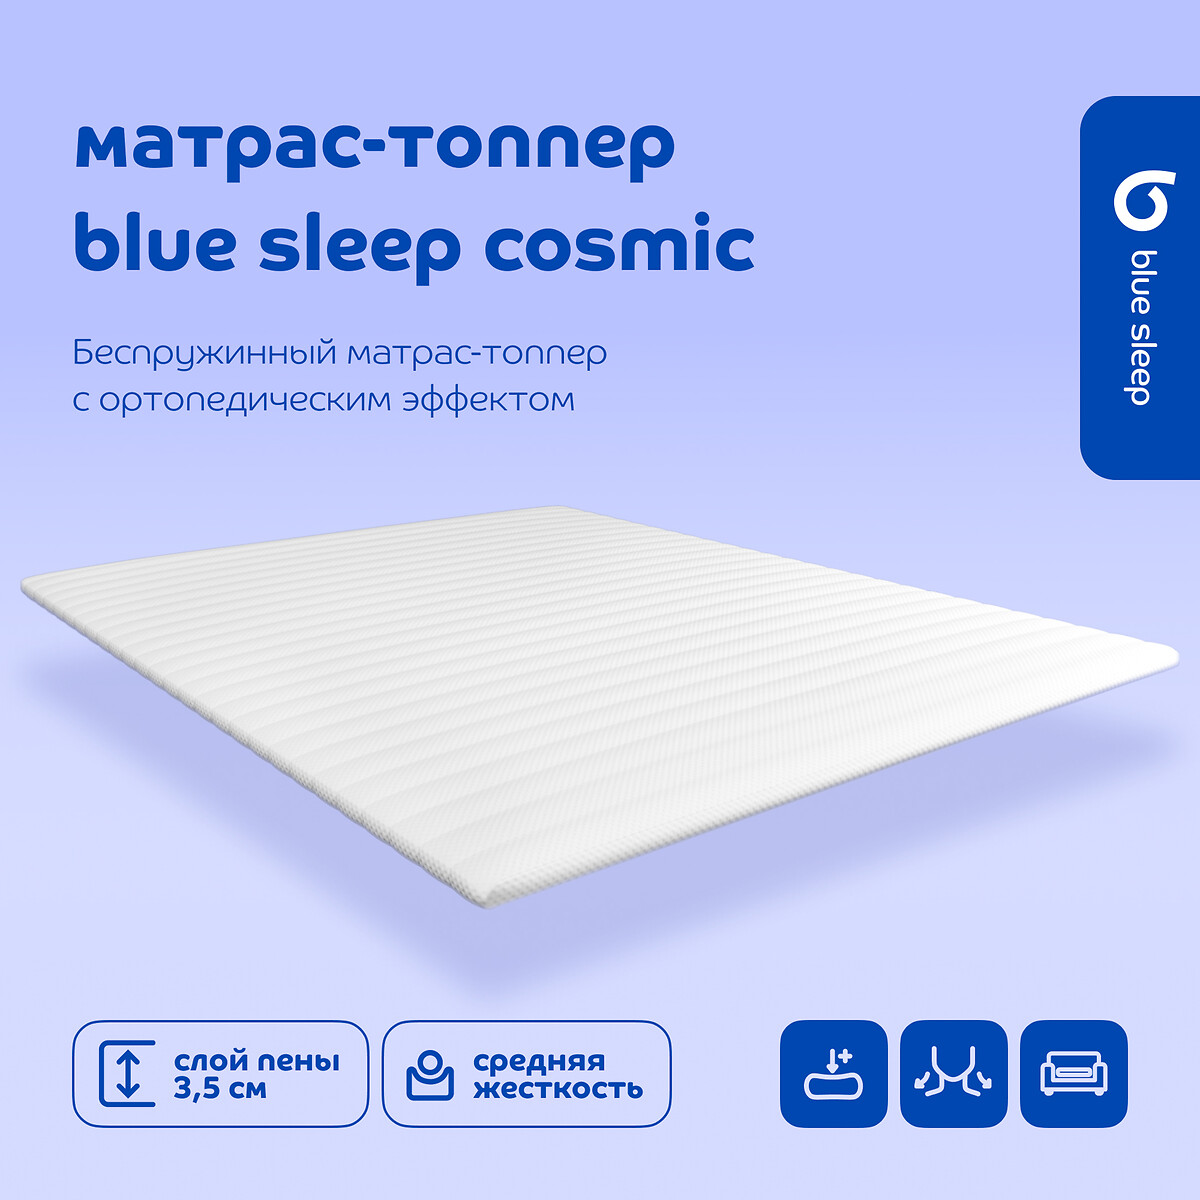 Топпер Blue Sleep Cosmic 90 x 200 см белый LaRedoute, размер 90 x 200 см - фото 4